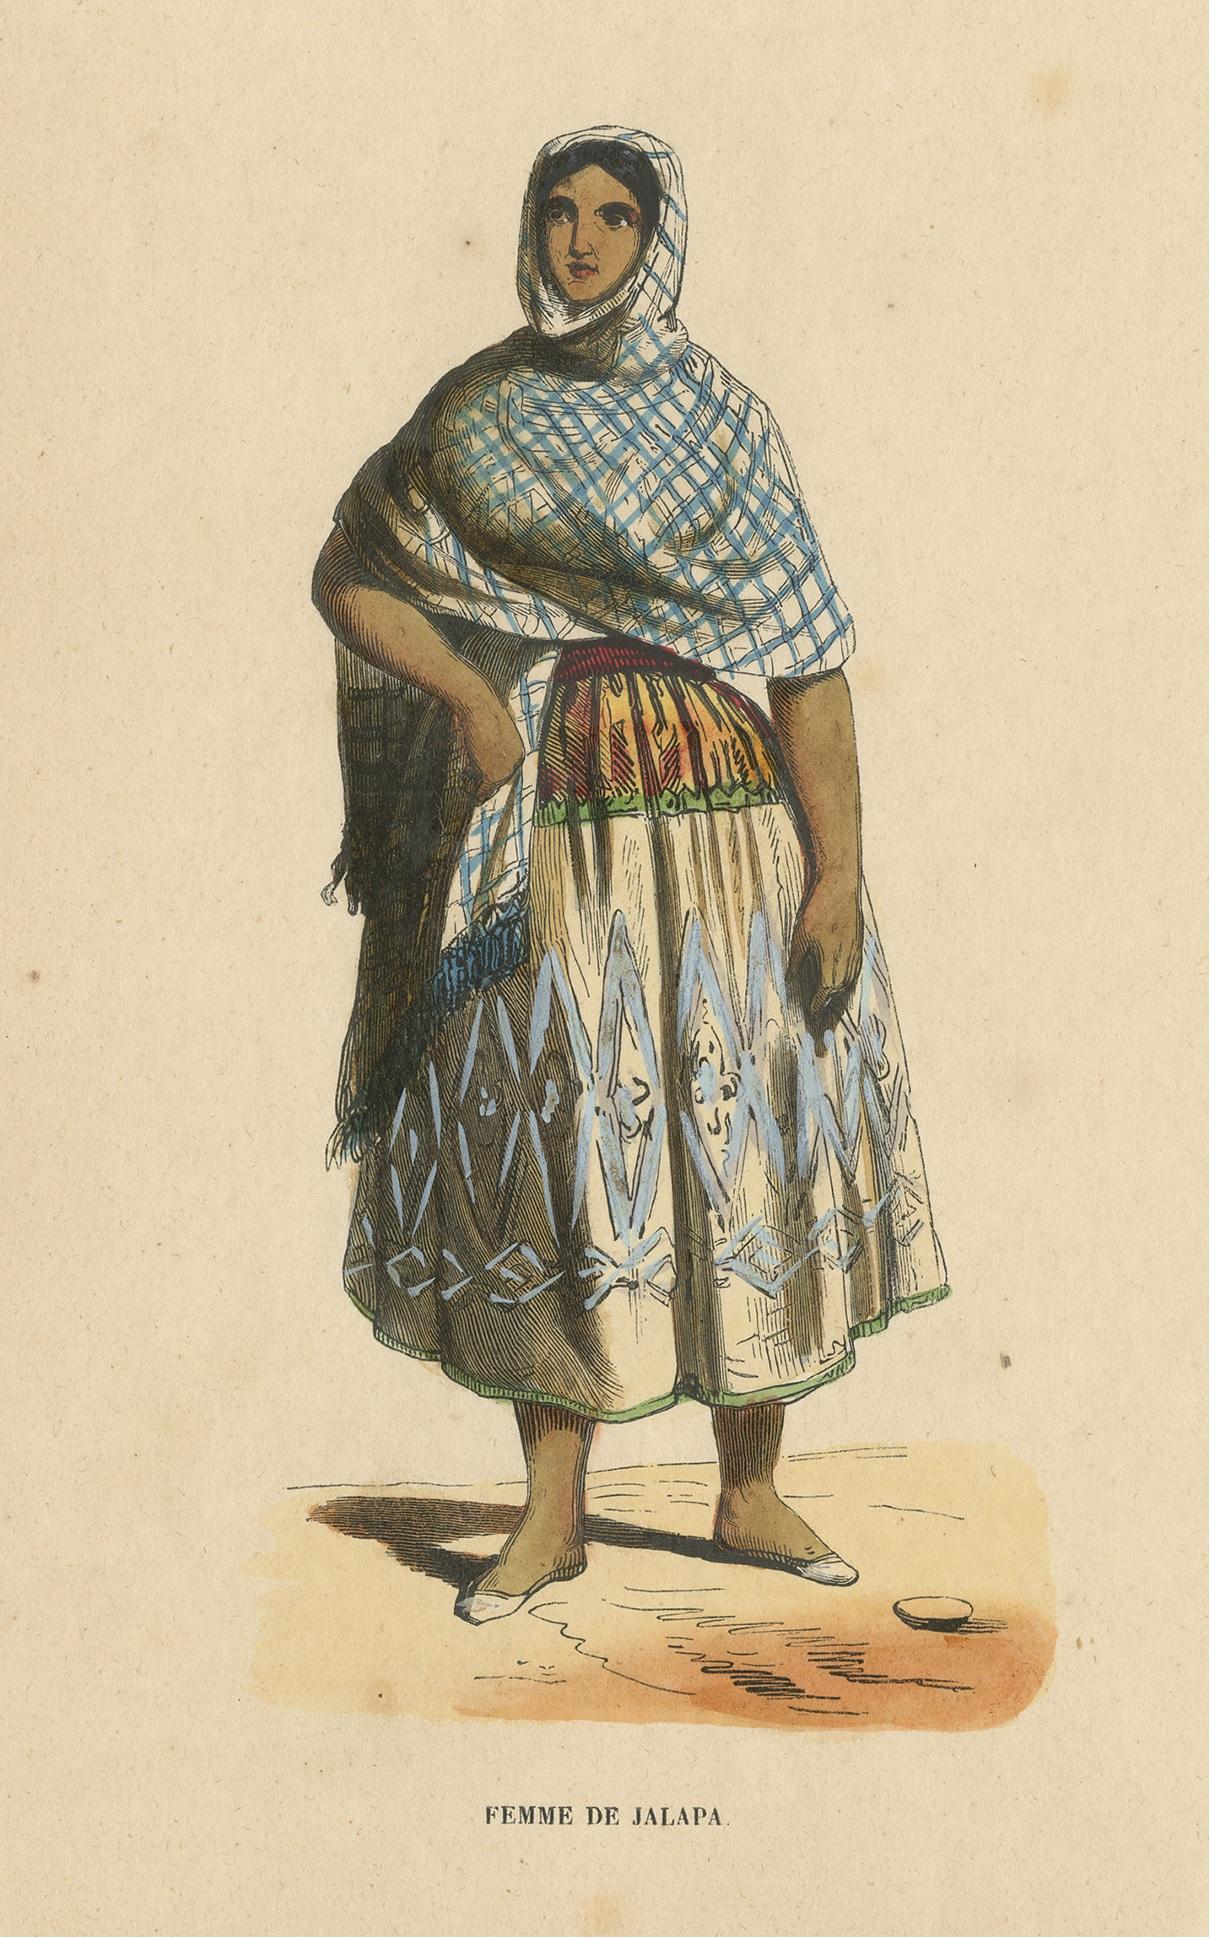 Antique costume print titled 'Femme de Jalapa'. Original antique print of a female in Jalapa. This print originates from 'Moeurs, usages et costumes de tous les peuples du monde' by Auguste Wahlen.